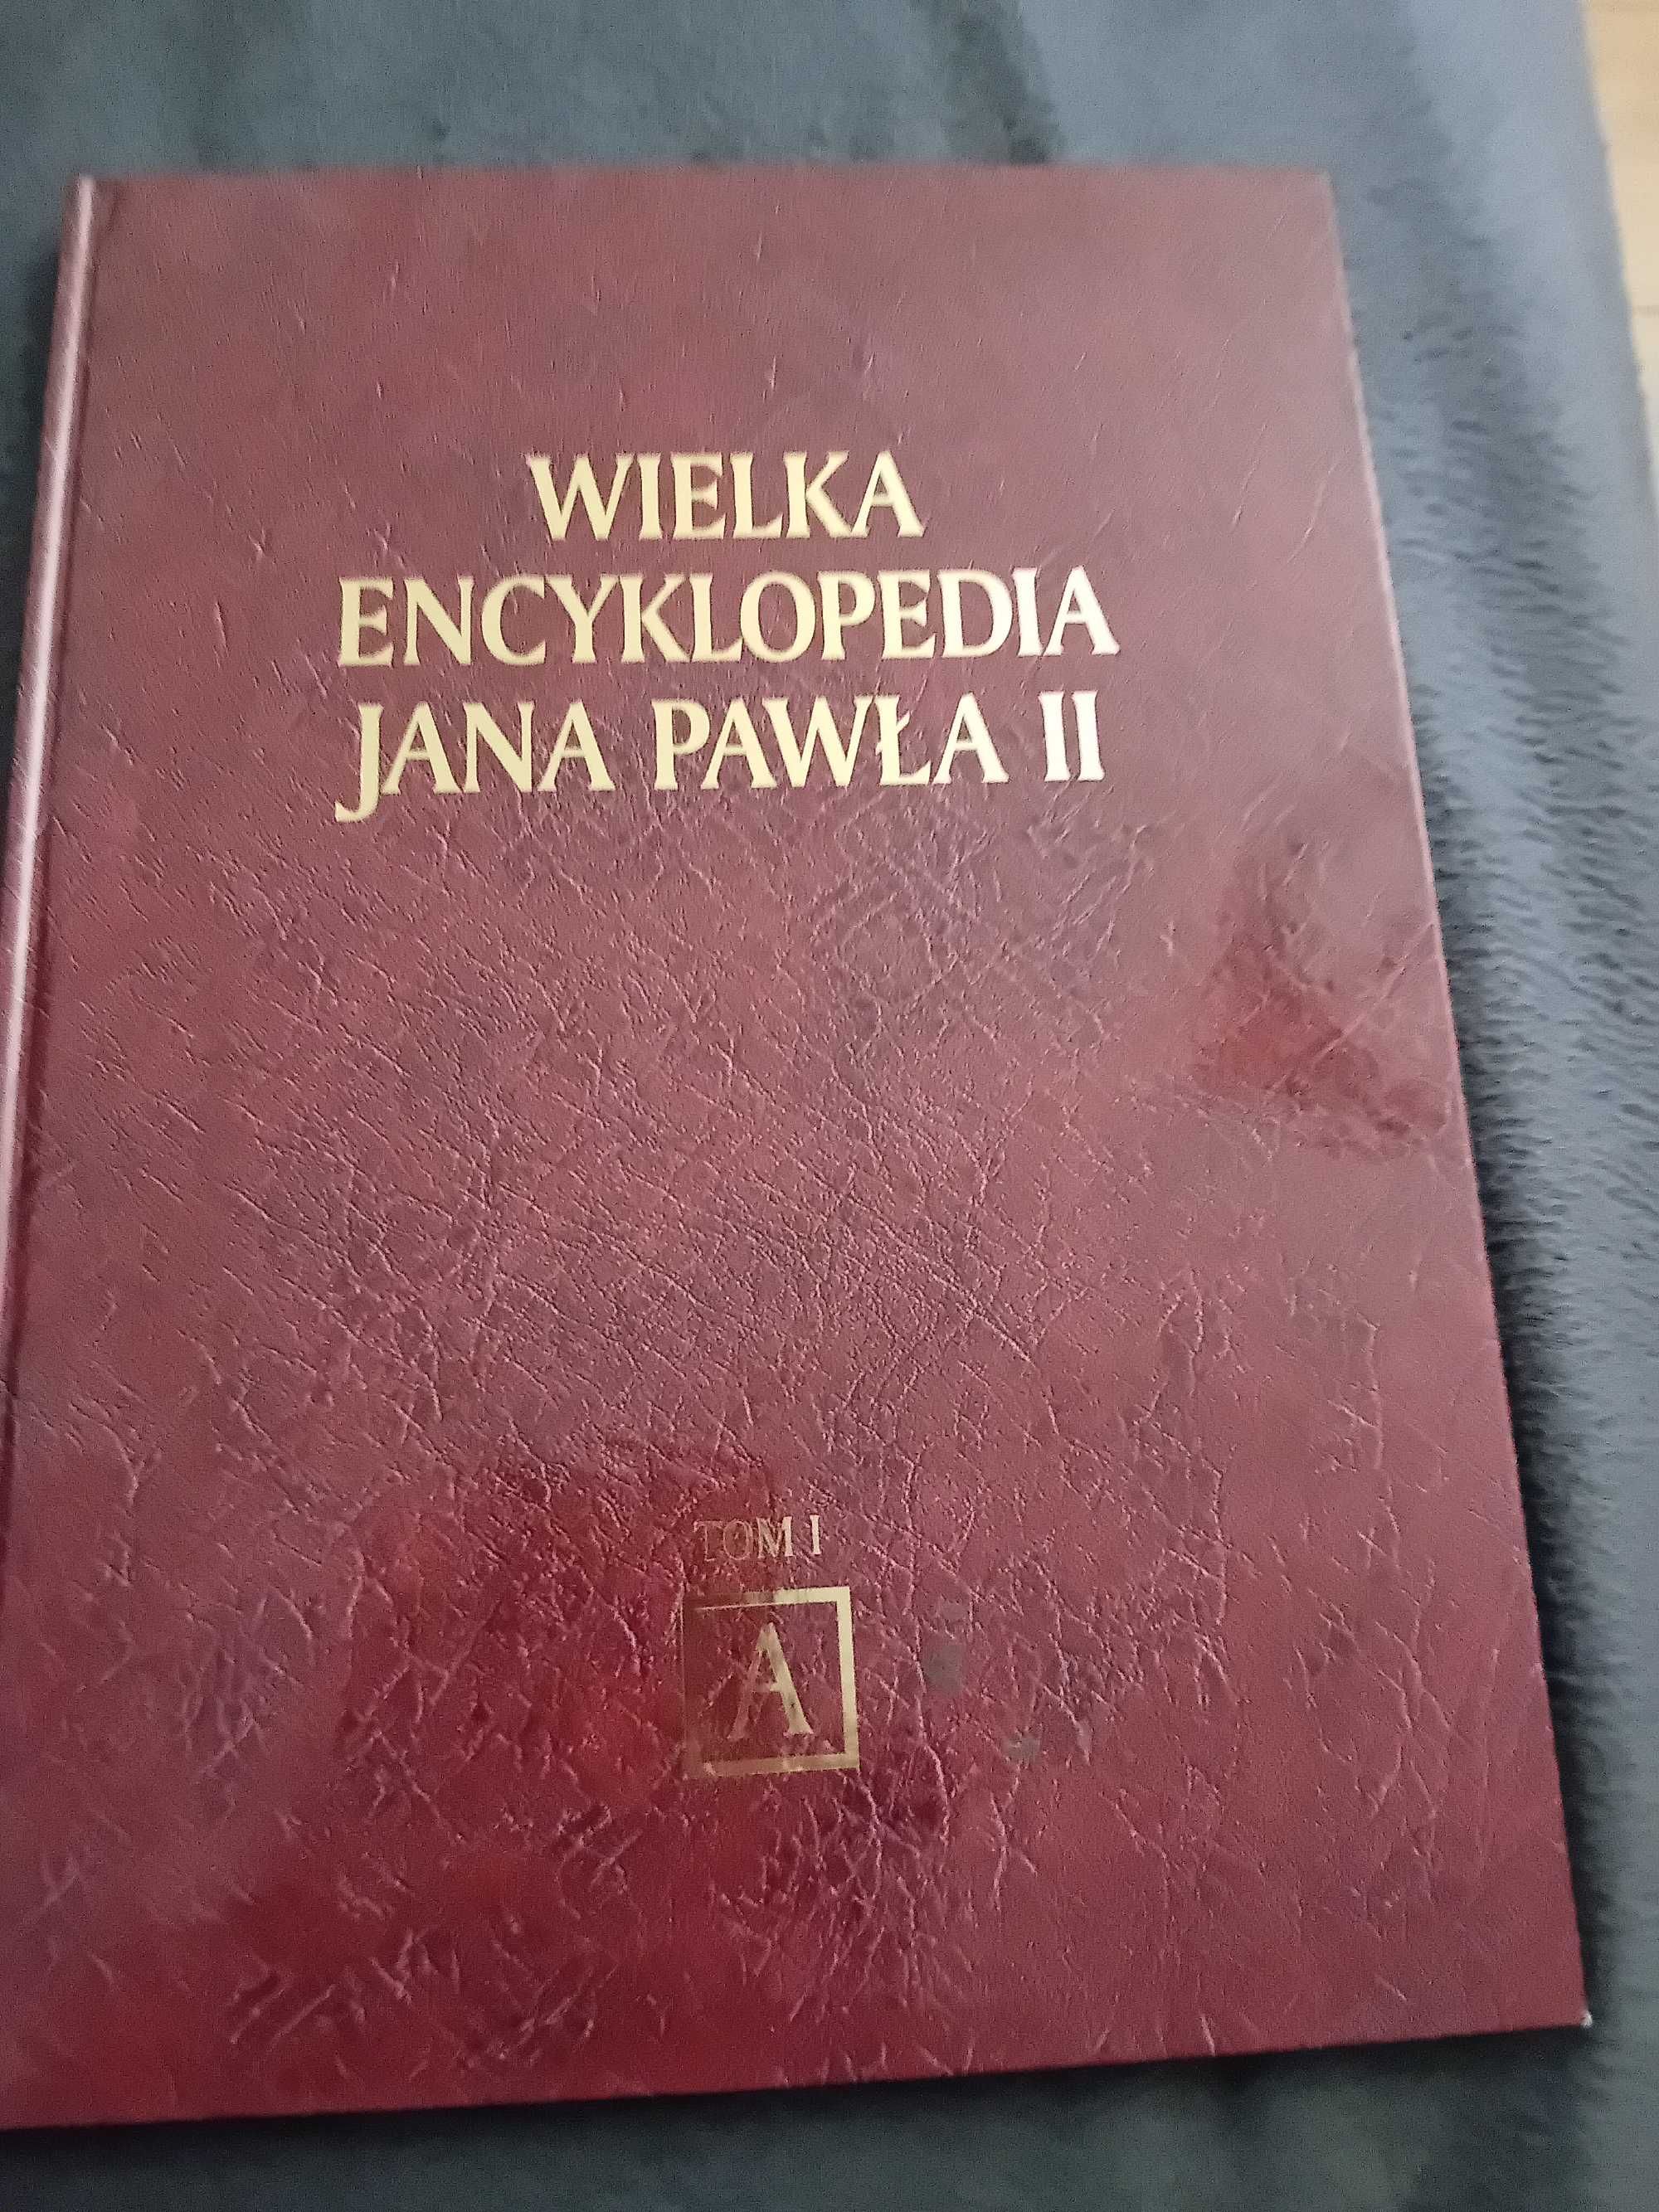 Wielka encyklopedia Jana Pawla II